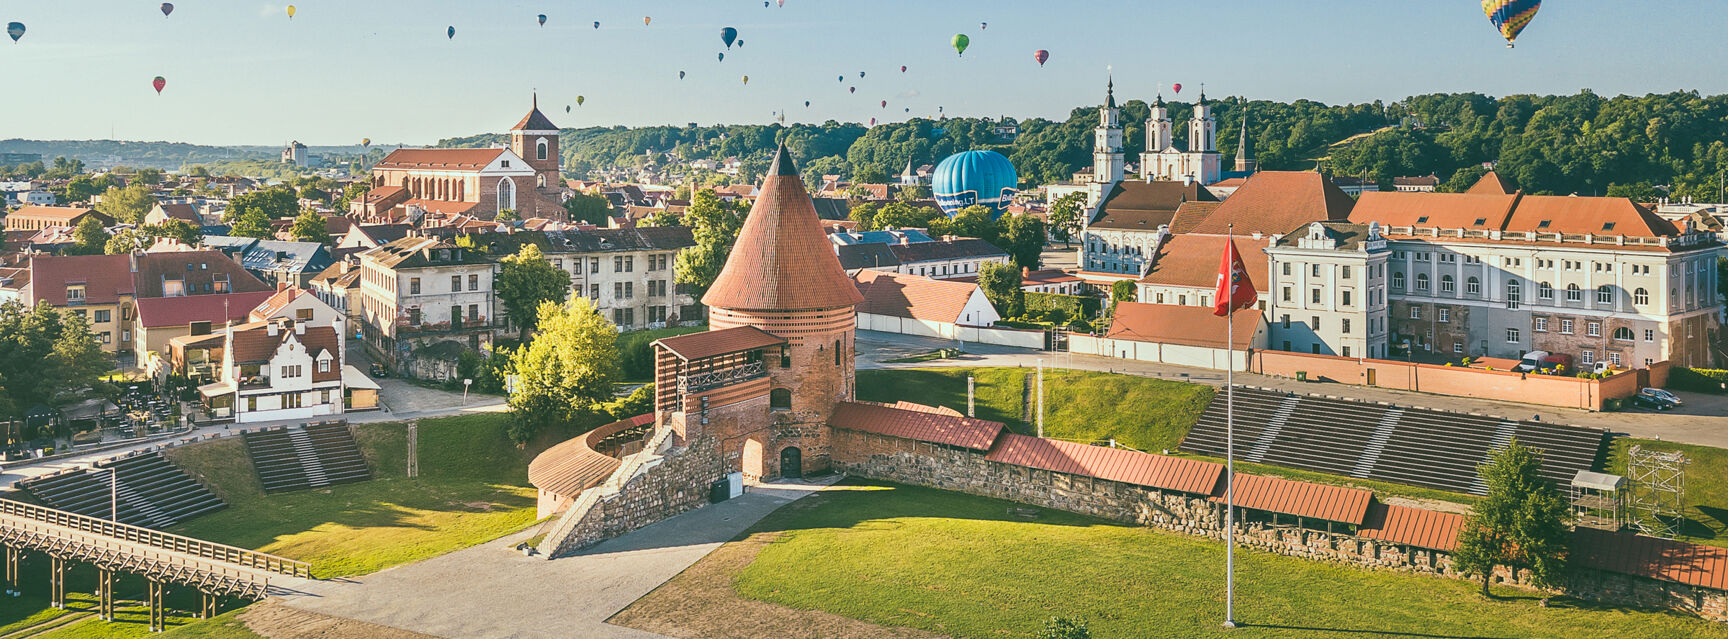 Titelfoto Kaunas